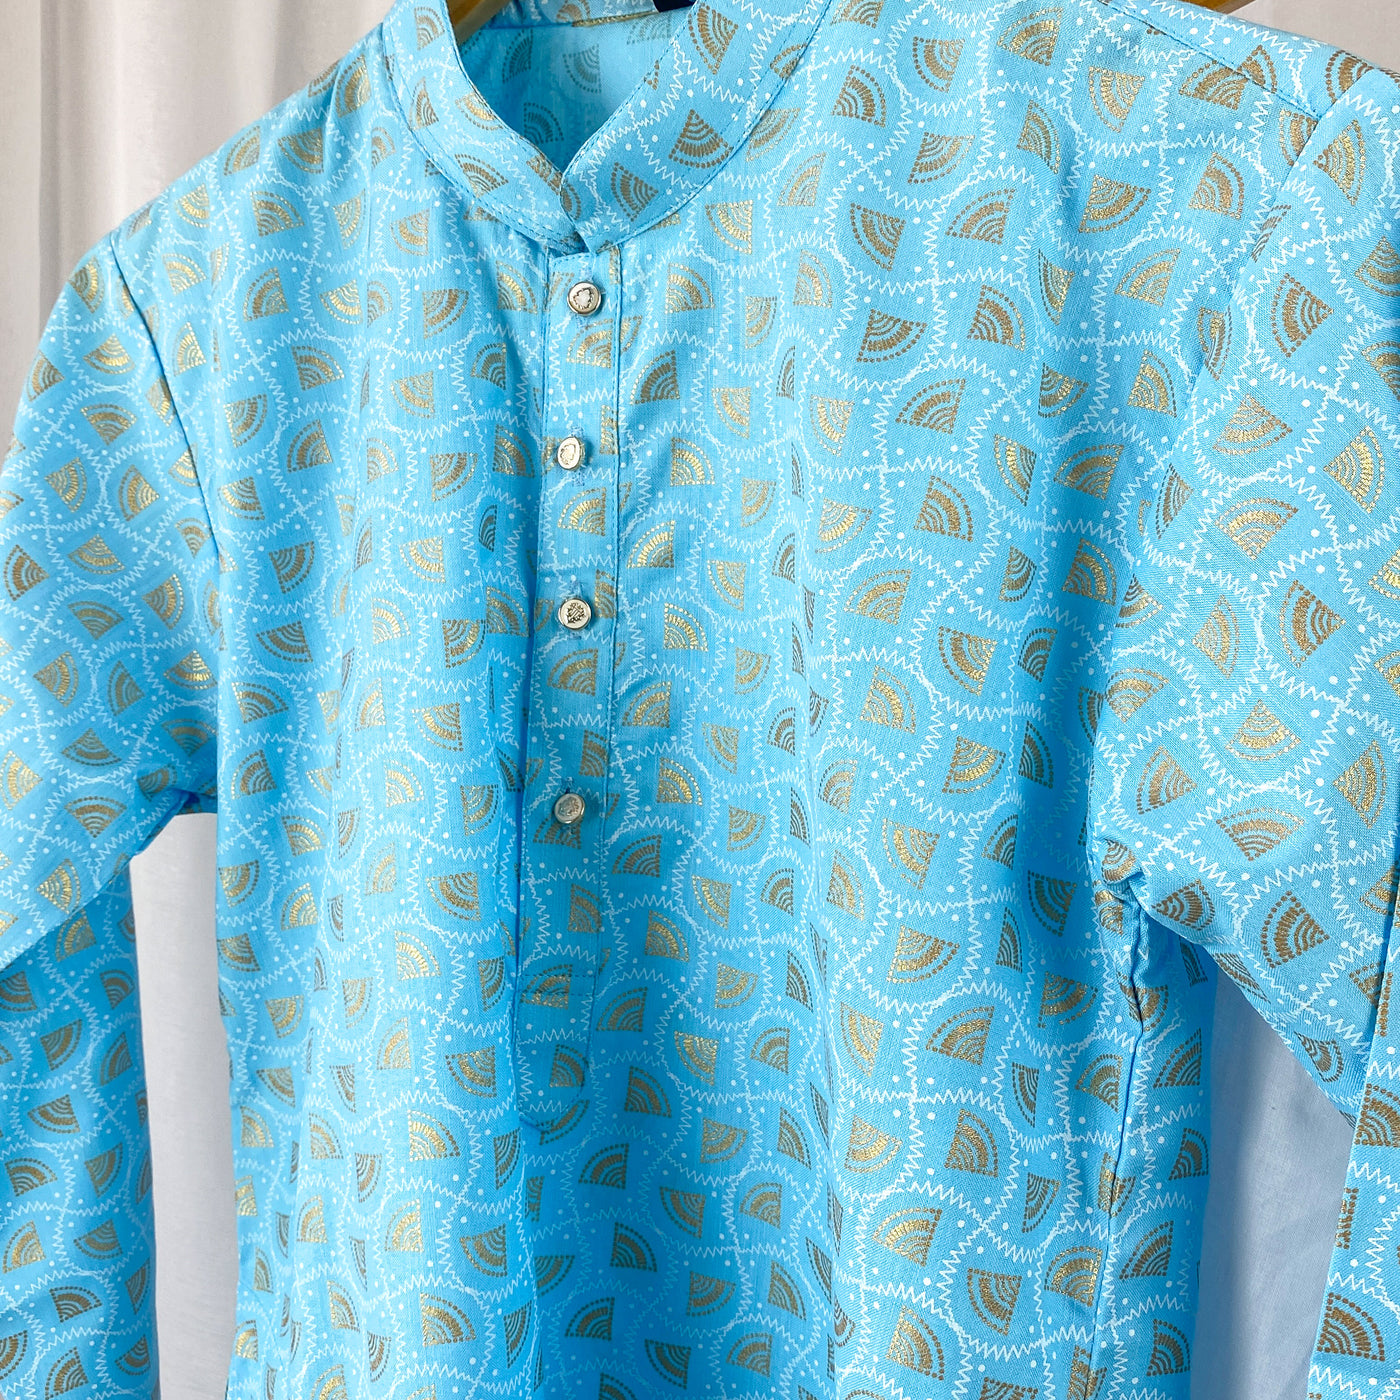 RISHI - Printed Baby Blue Cotton Kurta Pajama